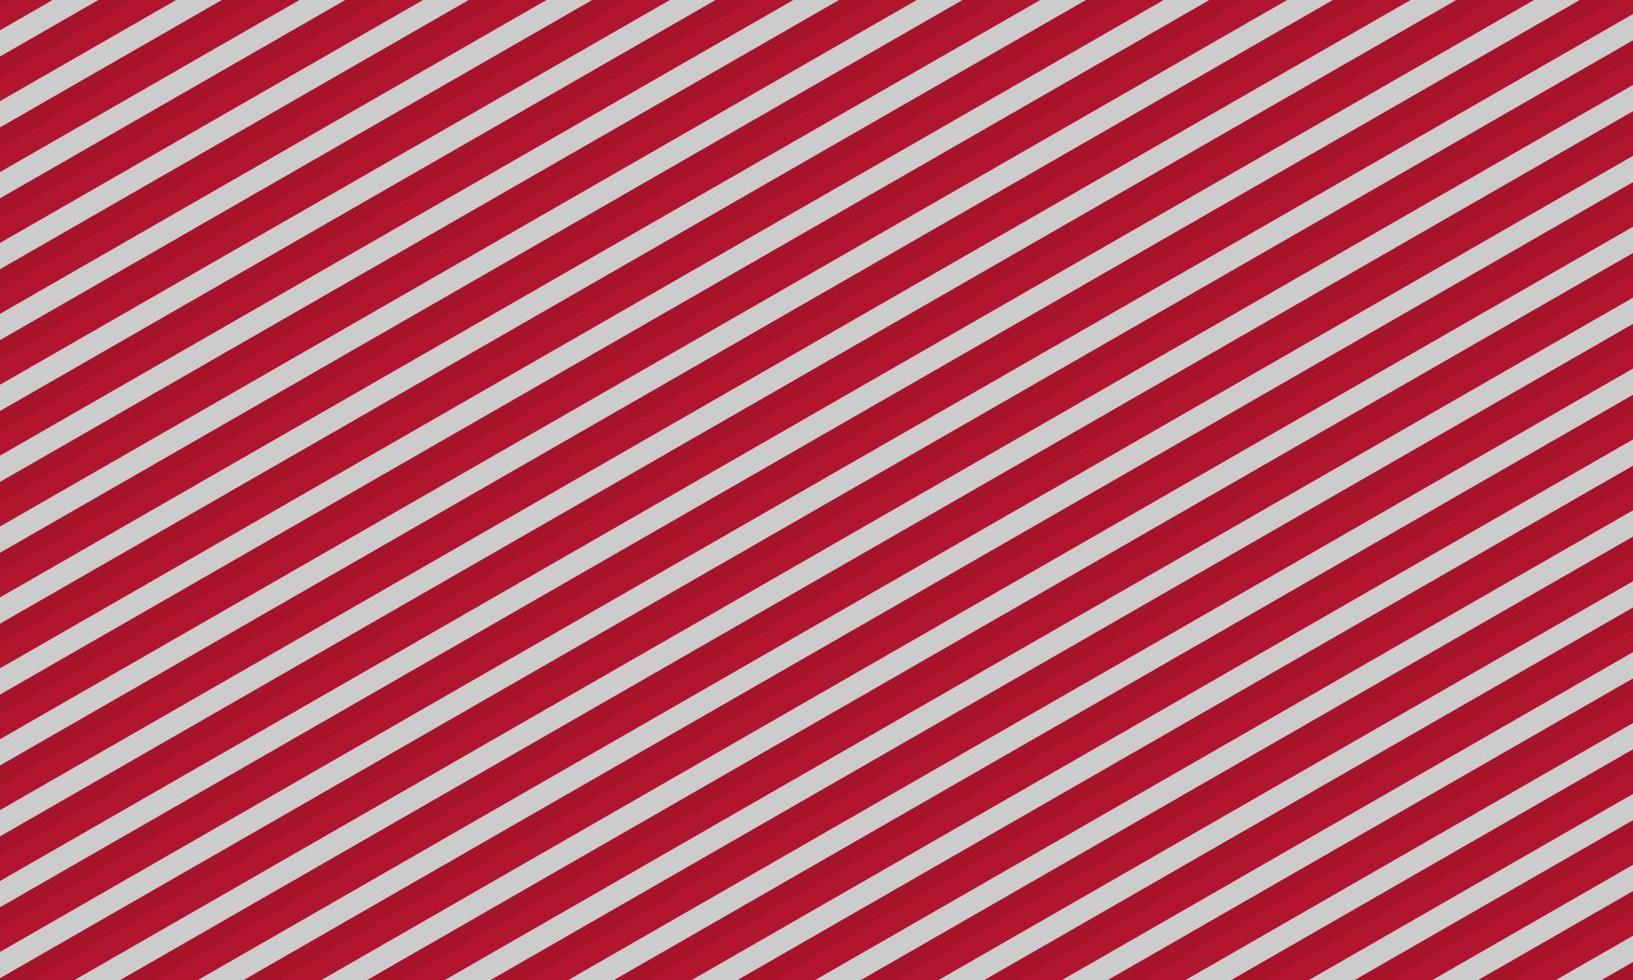 fondo blanco y rojo con un patrón de líneas diagonales. fondo festivo de año nuevo para la decoración. textura concepto de navidad ilustración vectorial vector